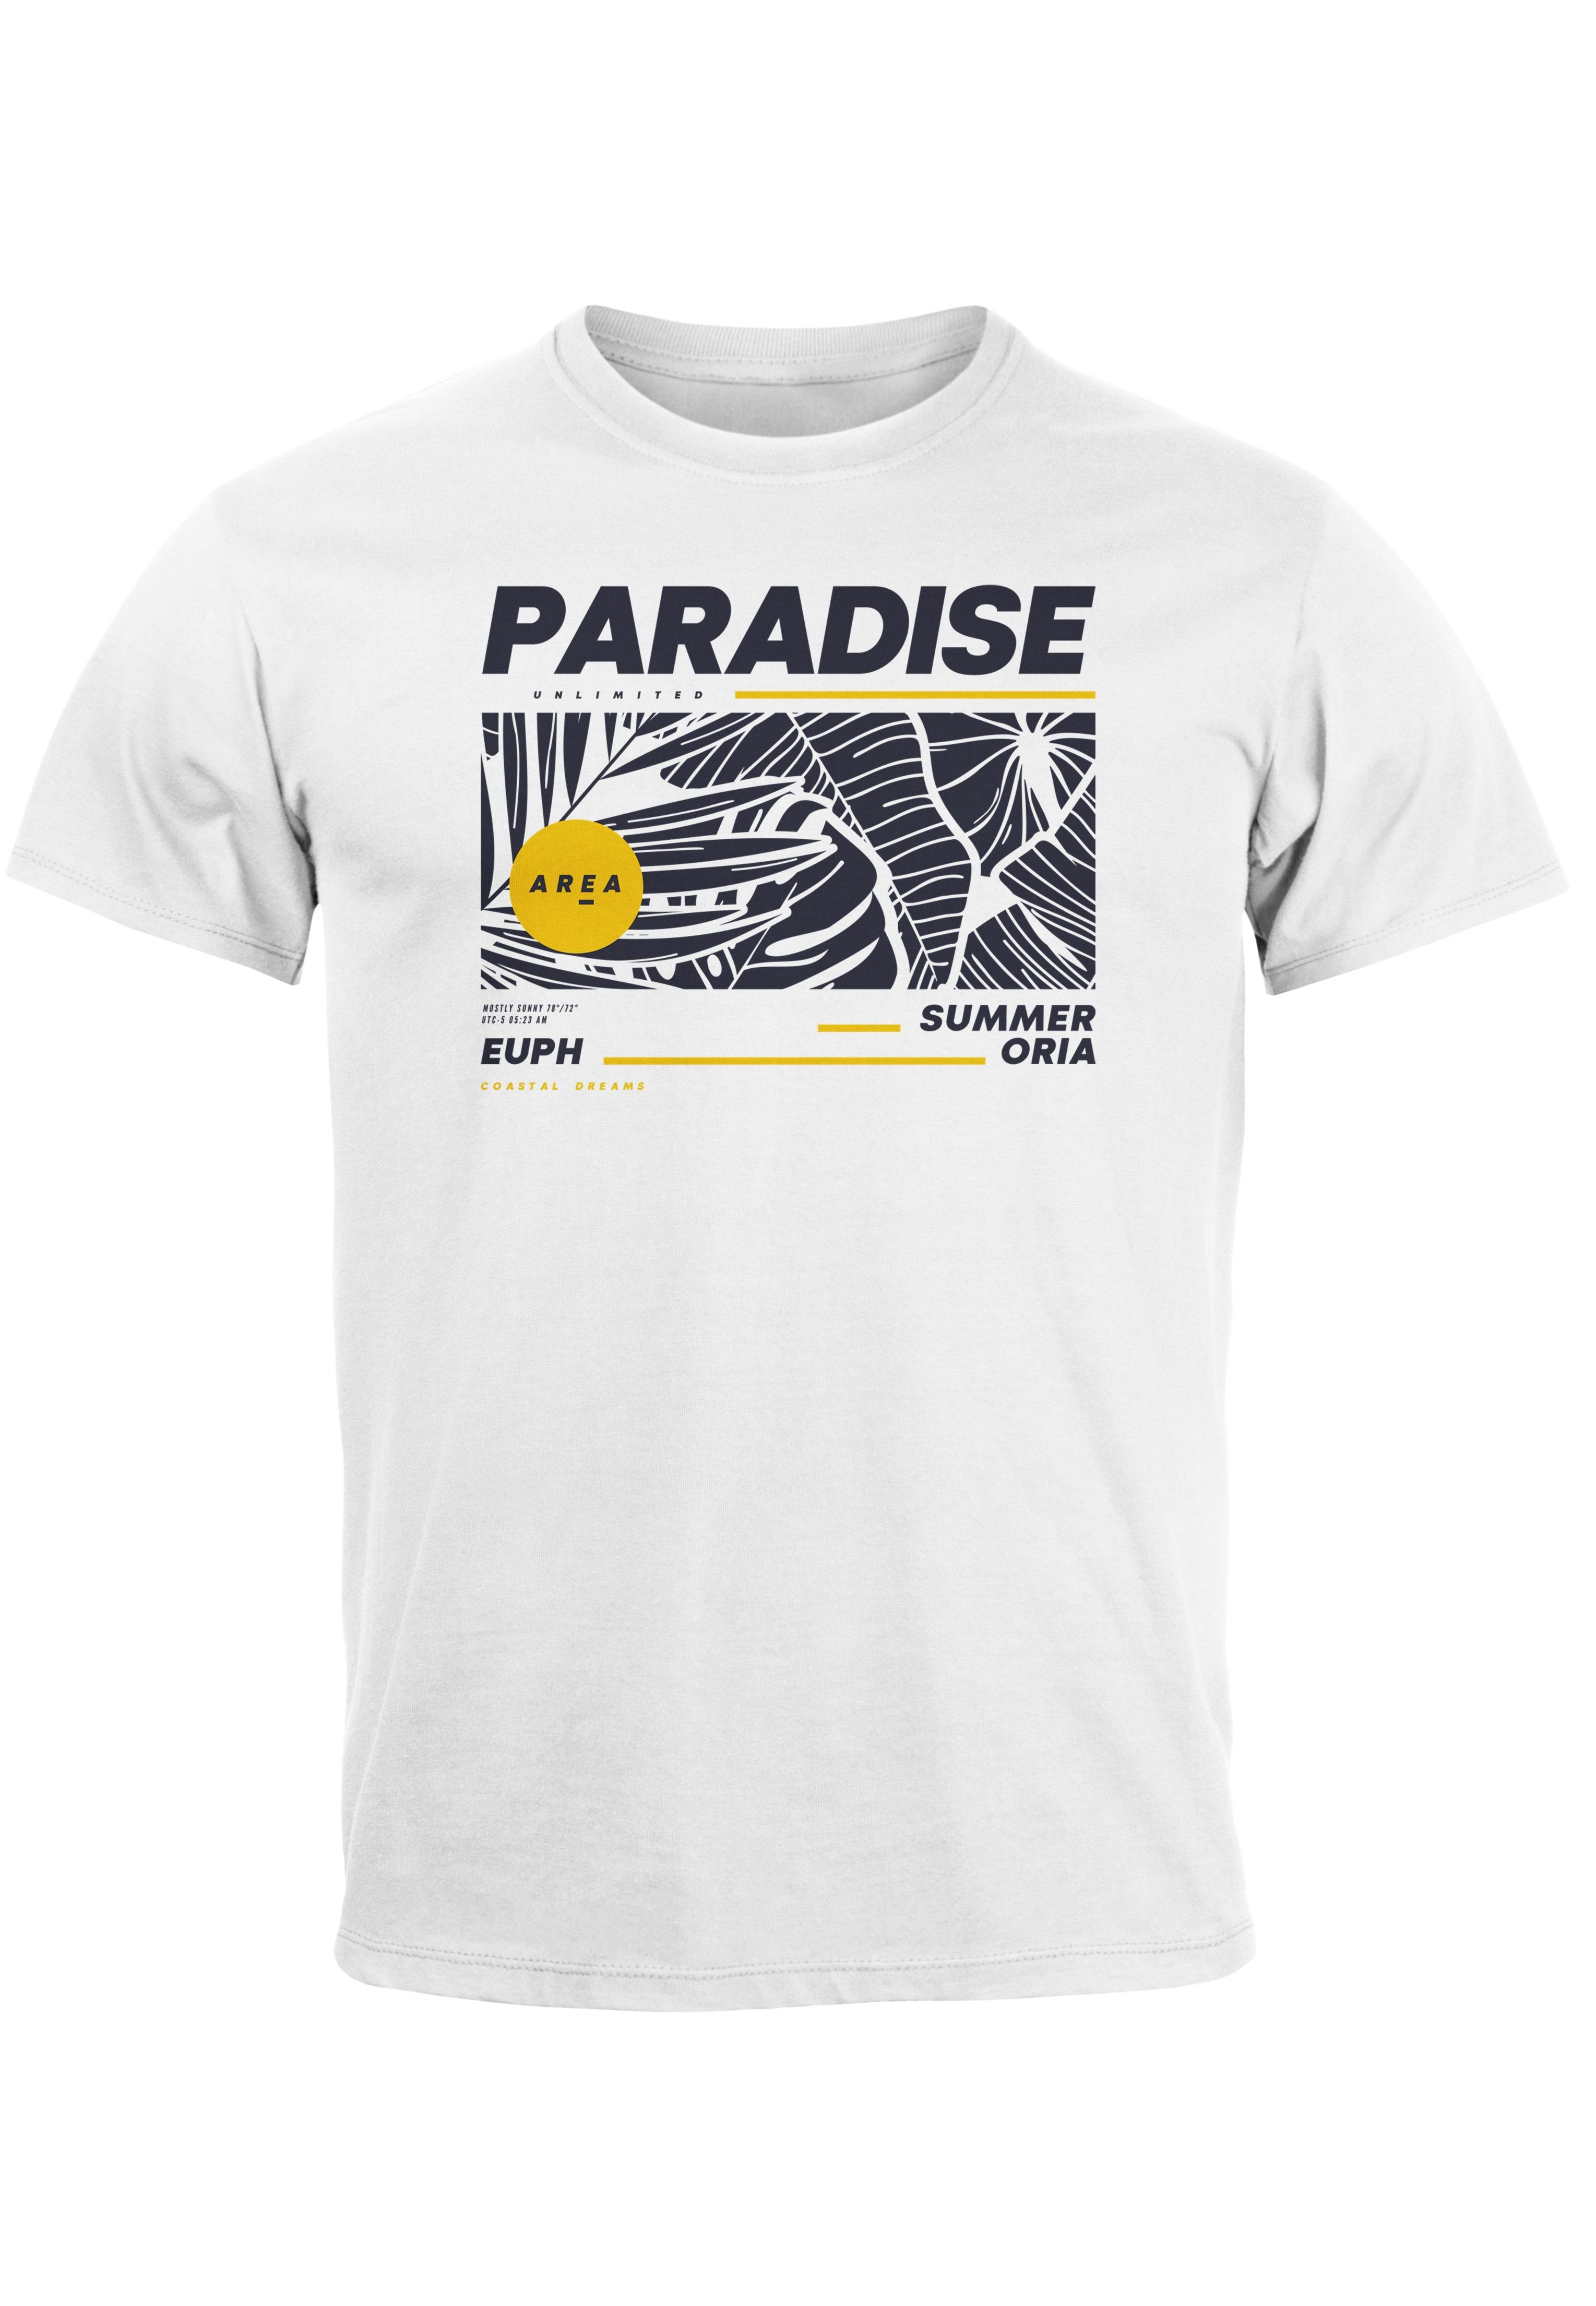 weiß Motiv mit T-Shirt Print Neverless Herren Sommer Print-Shirt Aufdruck Paradise Fash Unlimited Teachwear